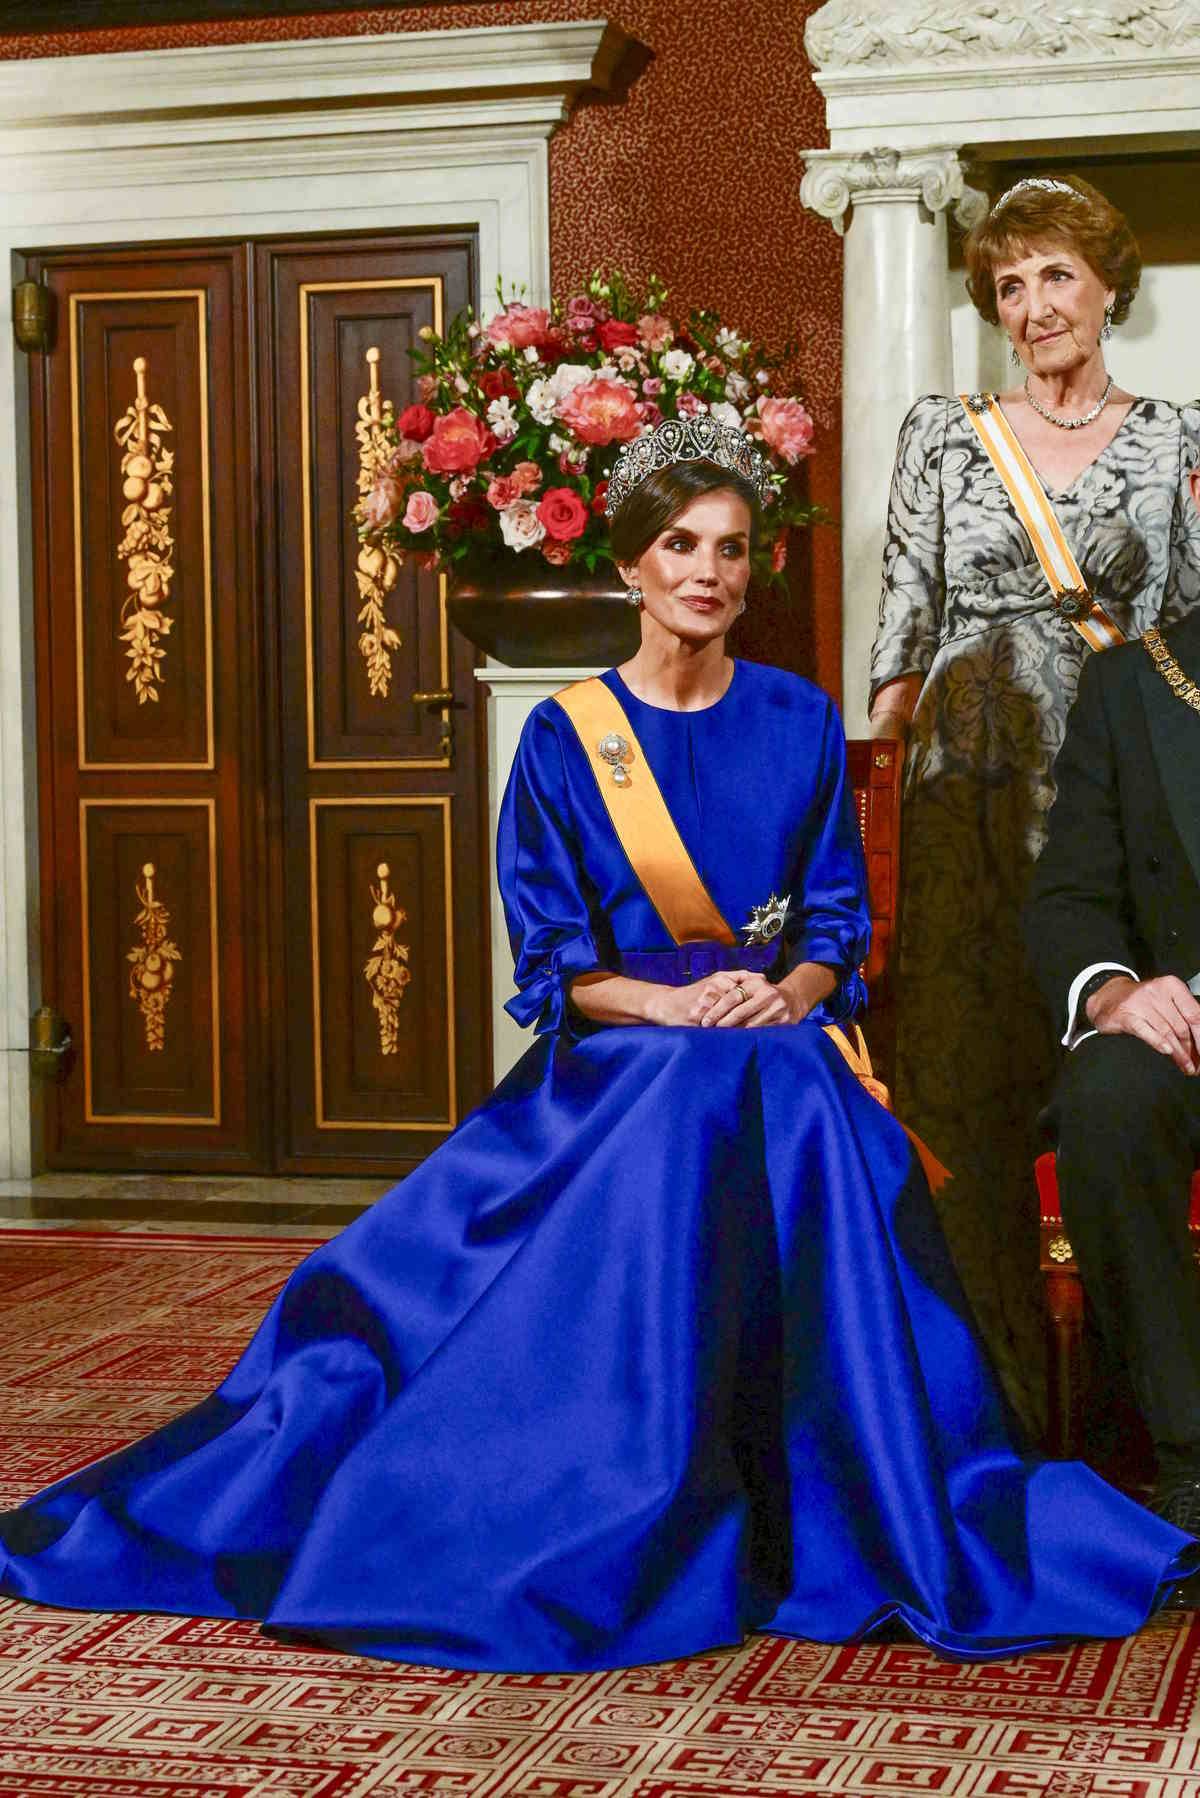 Królowa Letycja w balowej sukni w odcieniu royal blue. Hiszpańska rodzina królewska odwiedza Holandię.